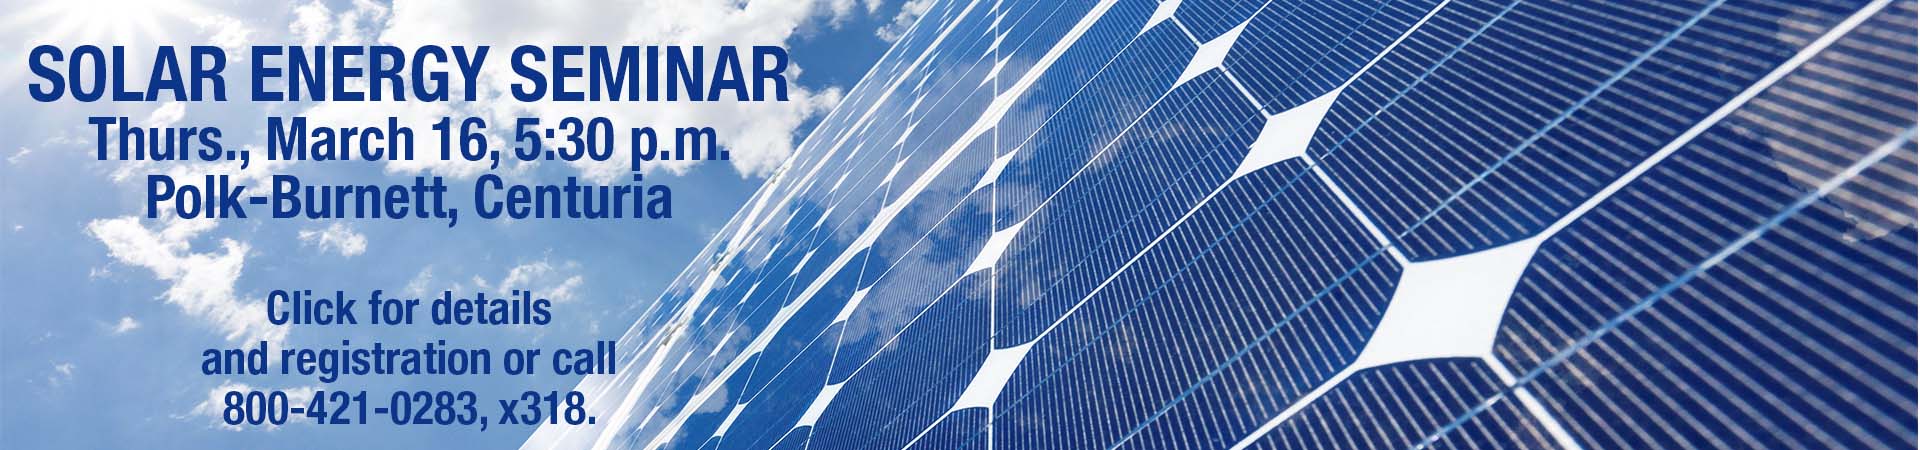 Register for solar seminar March 16